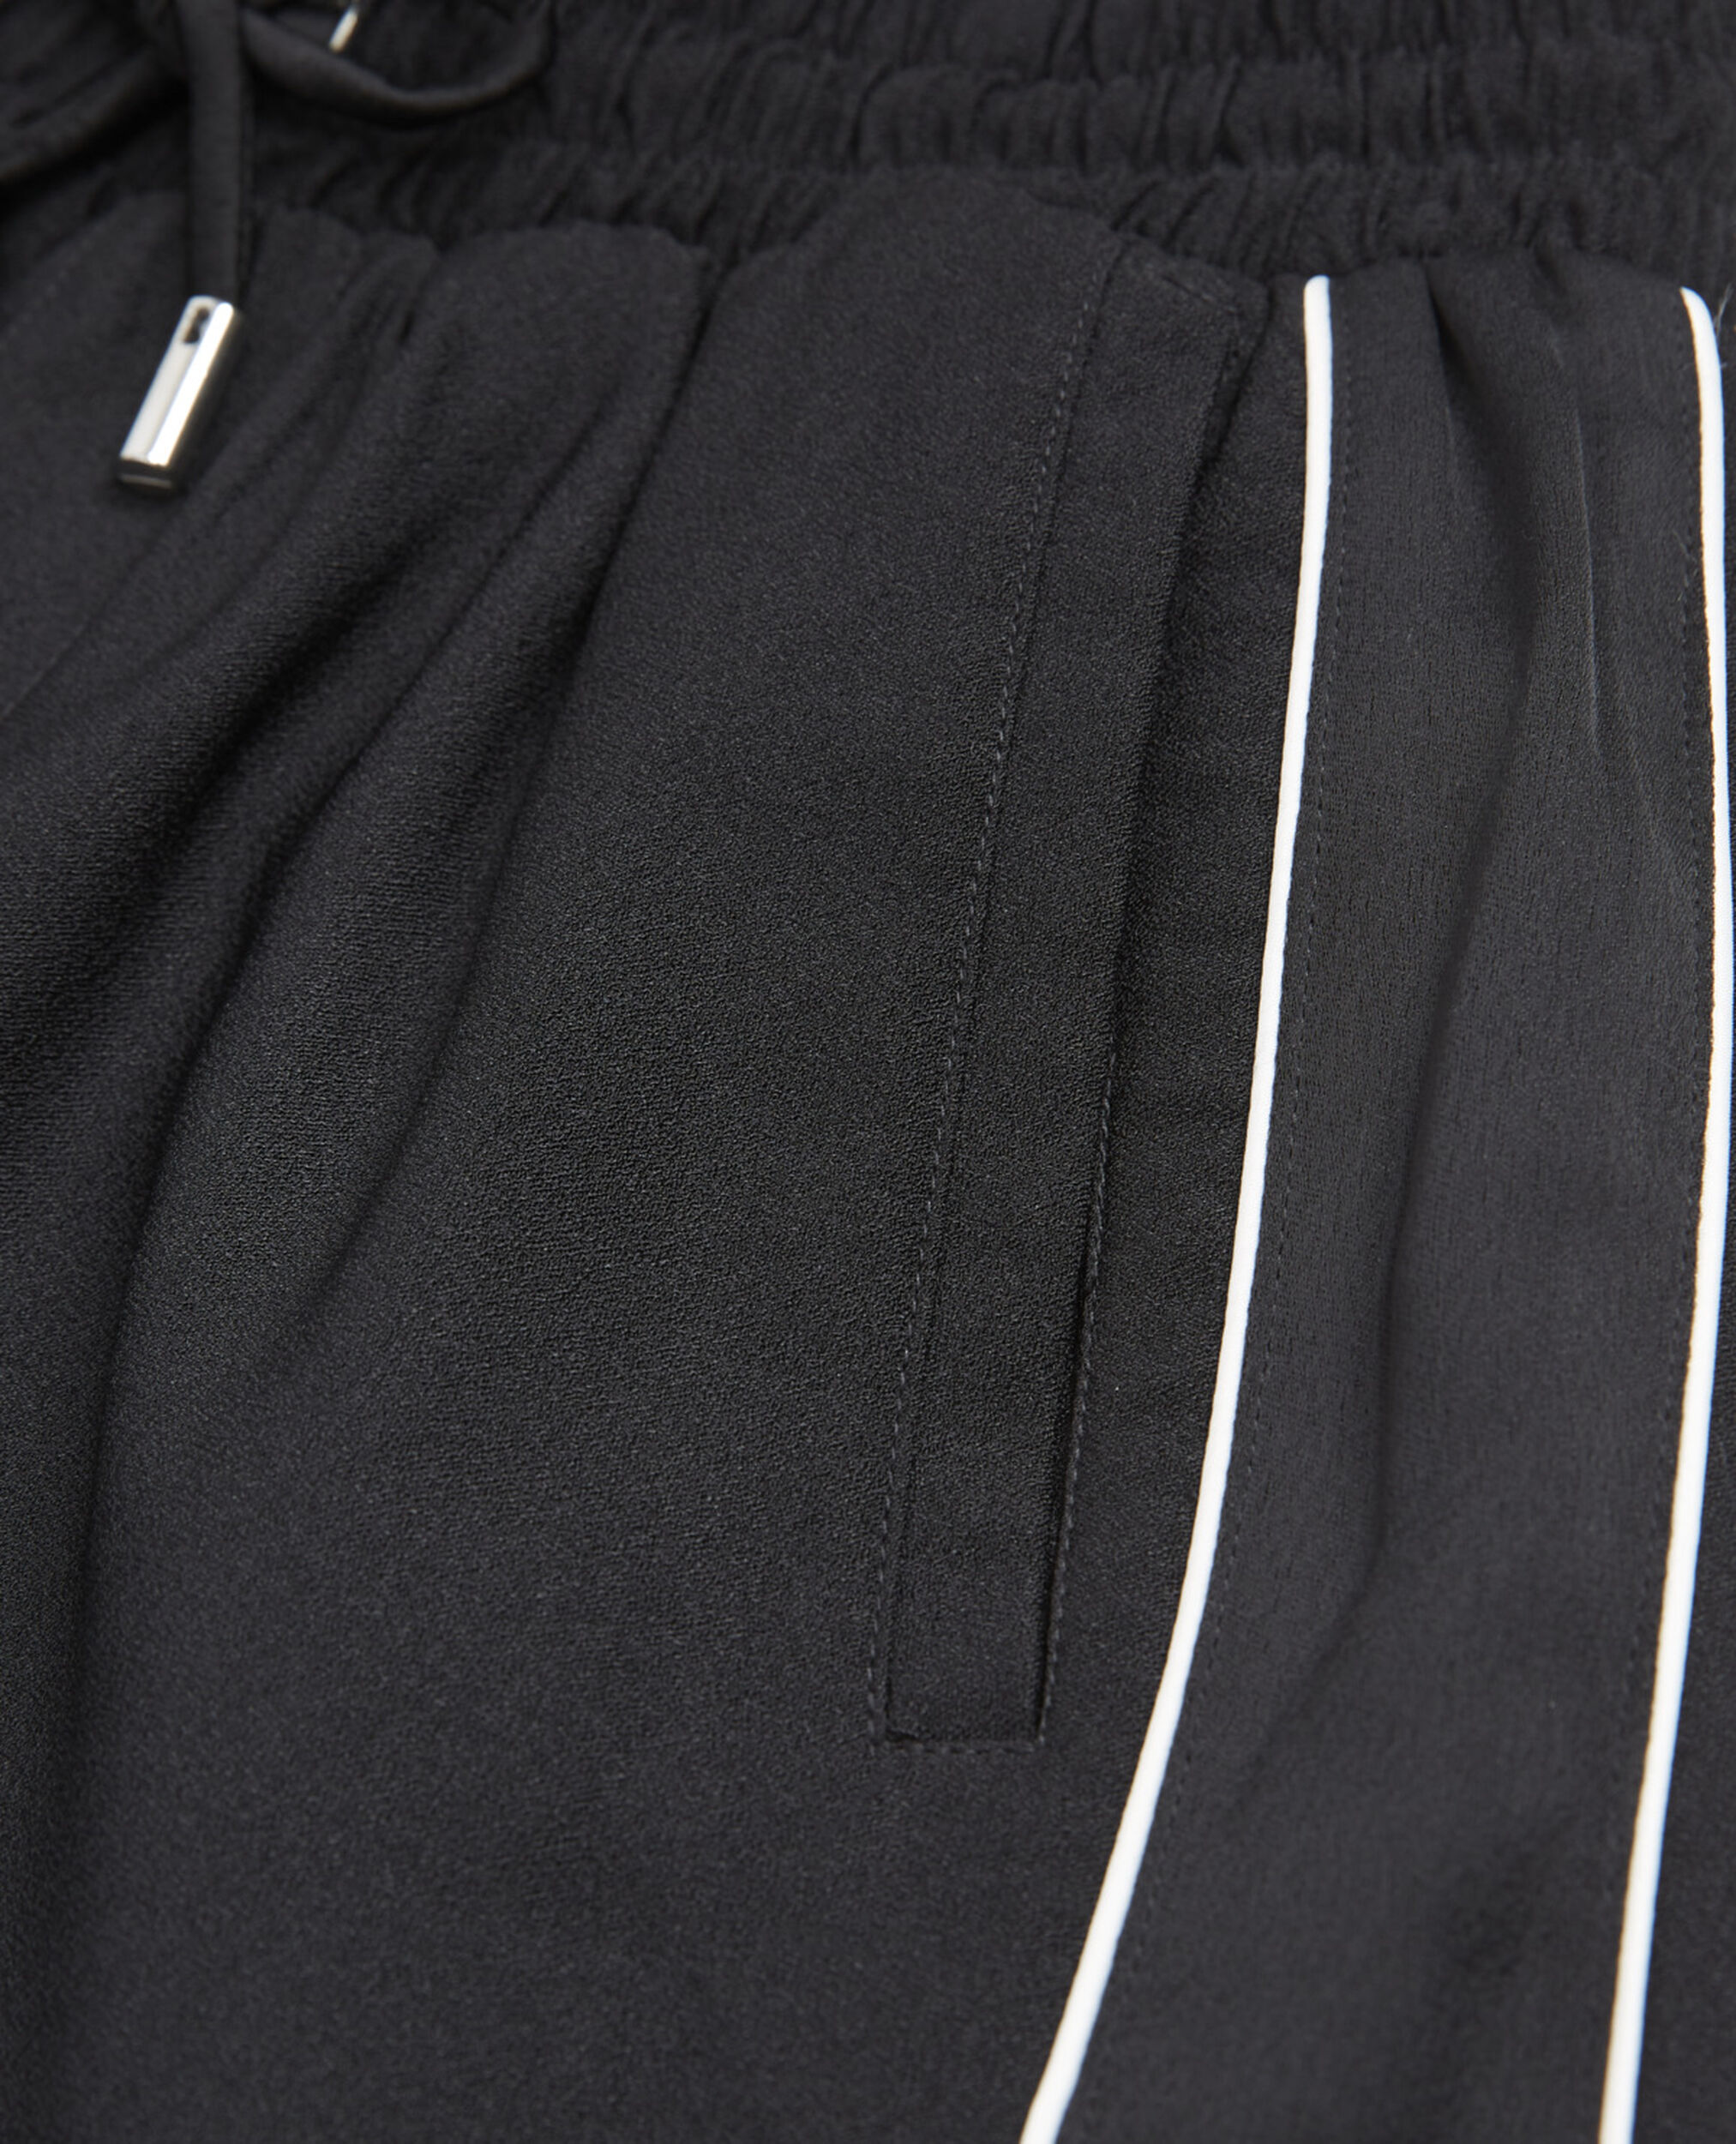 Pantalón fluido negro satén cordón cintura, BLACK, hi-res image number null